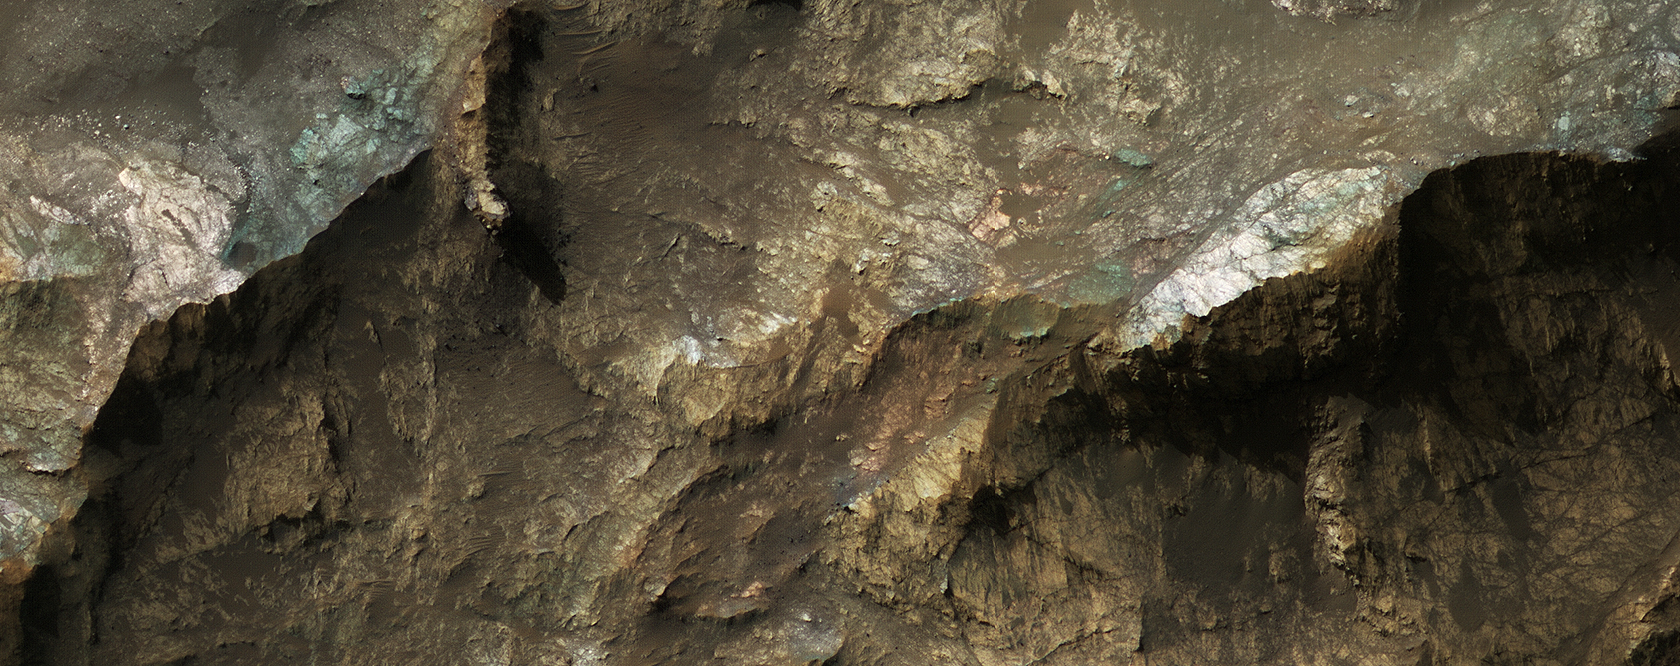 Mars Underground Exposed:  The Central Peak of Alga Crater